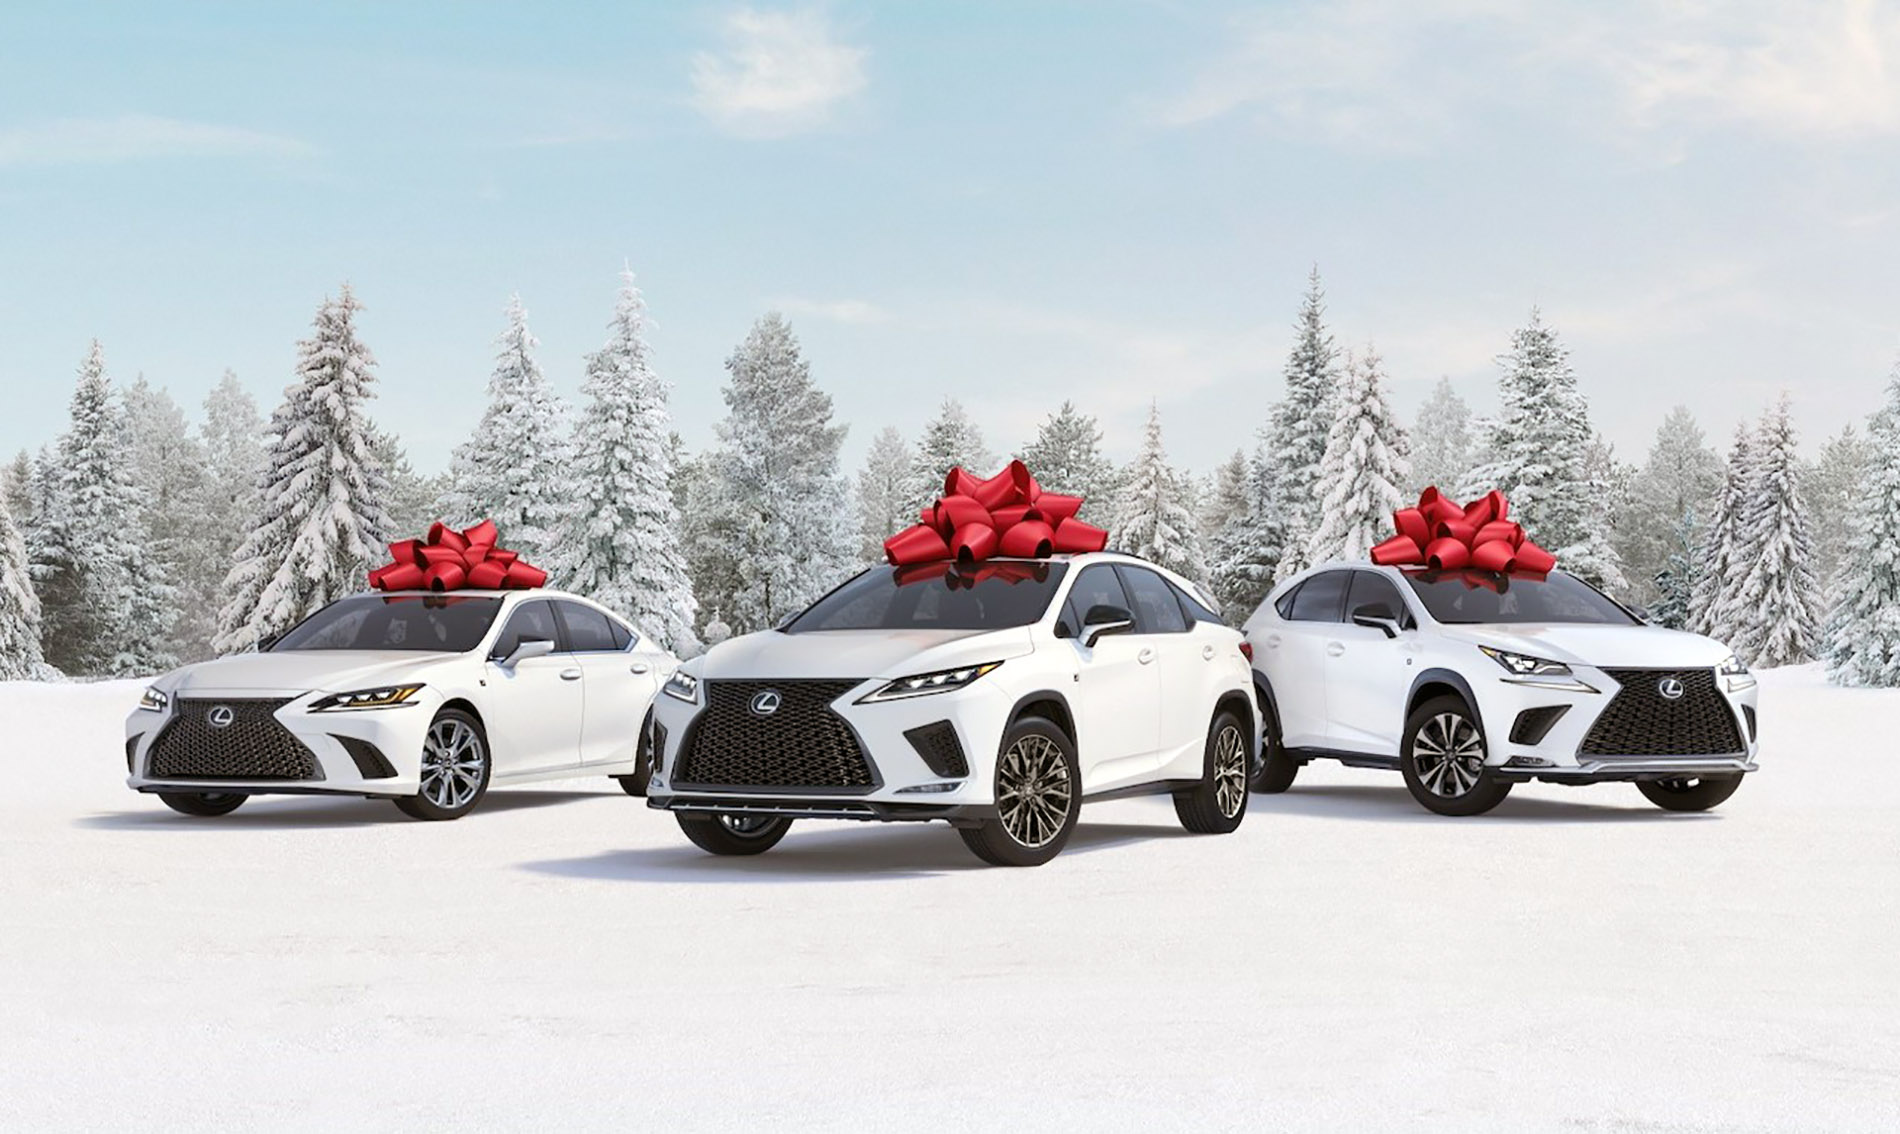 Tak Lexus stworzył świąteczną tradycję